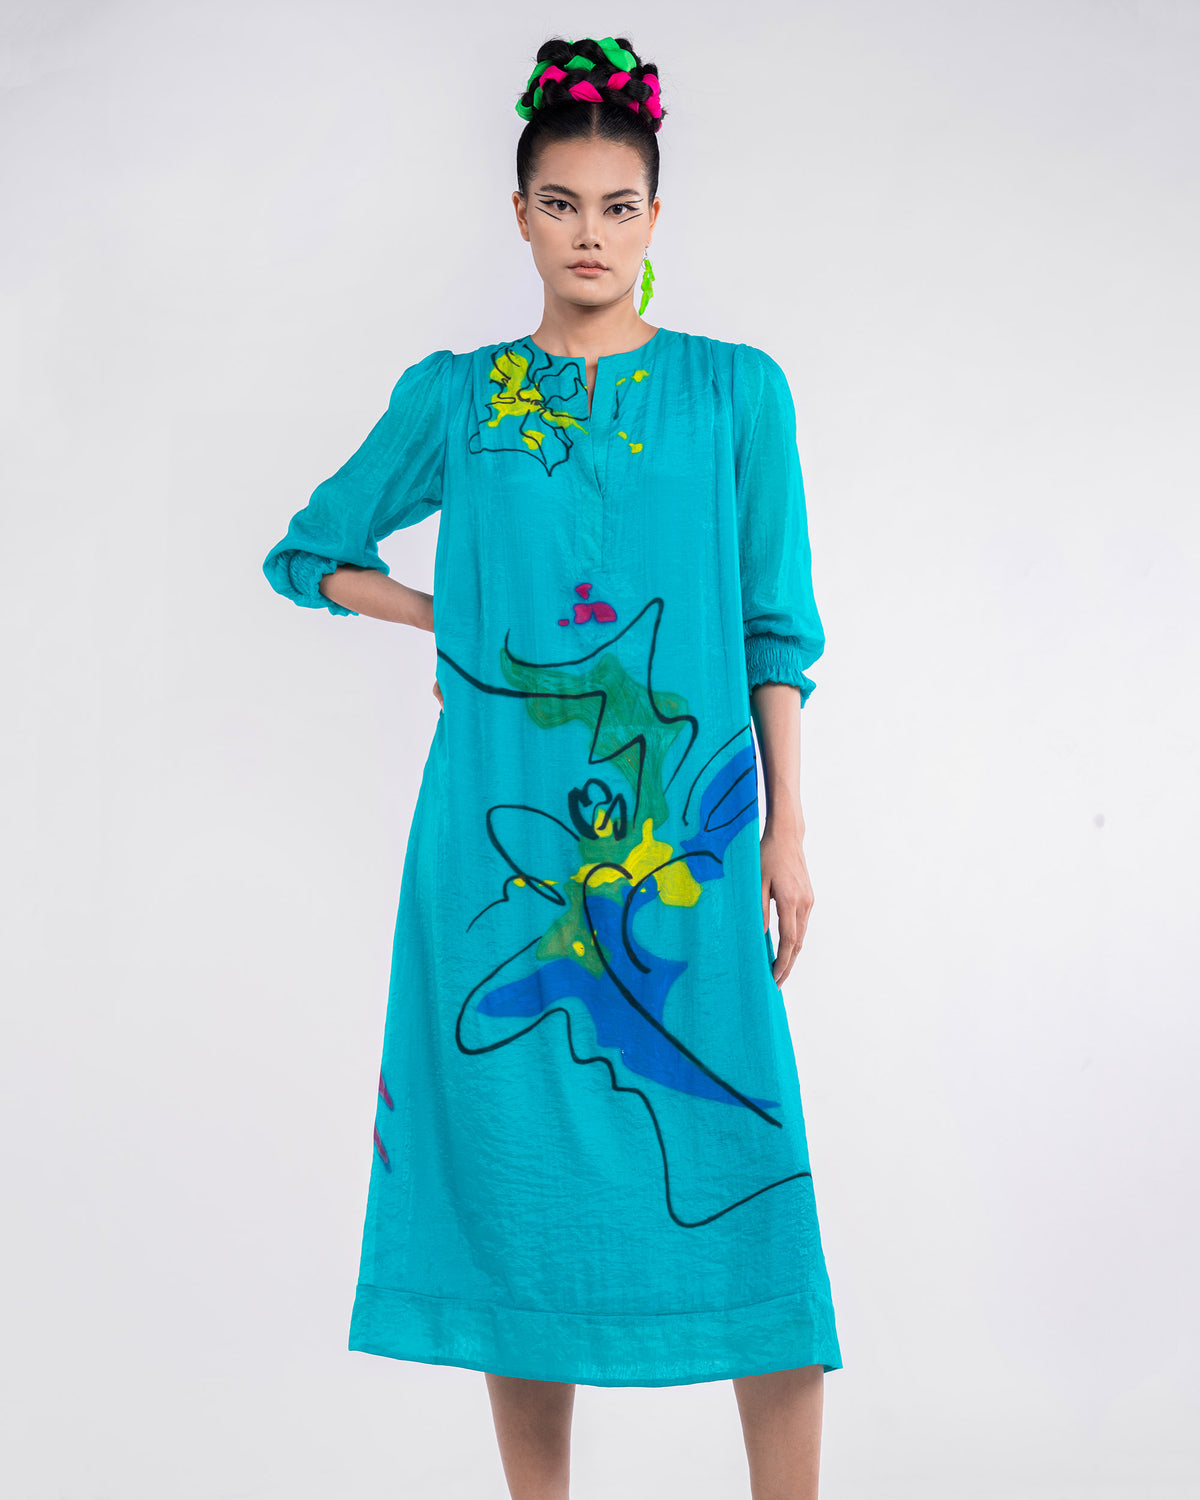 Striking Turquoise Flower - Đầm Suông Sơ Mi Xanh Ngọc Lam